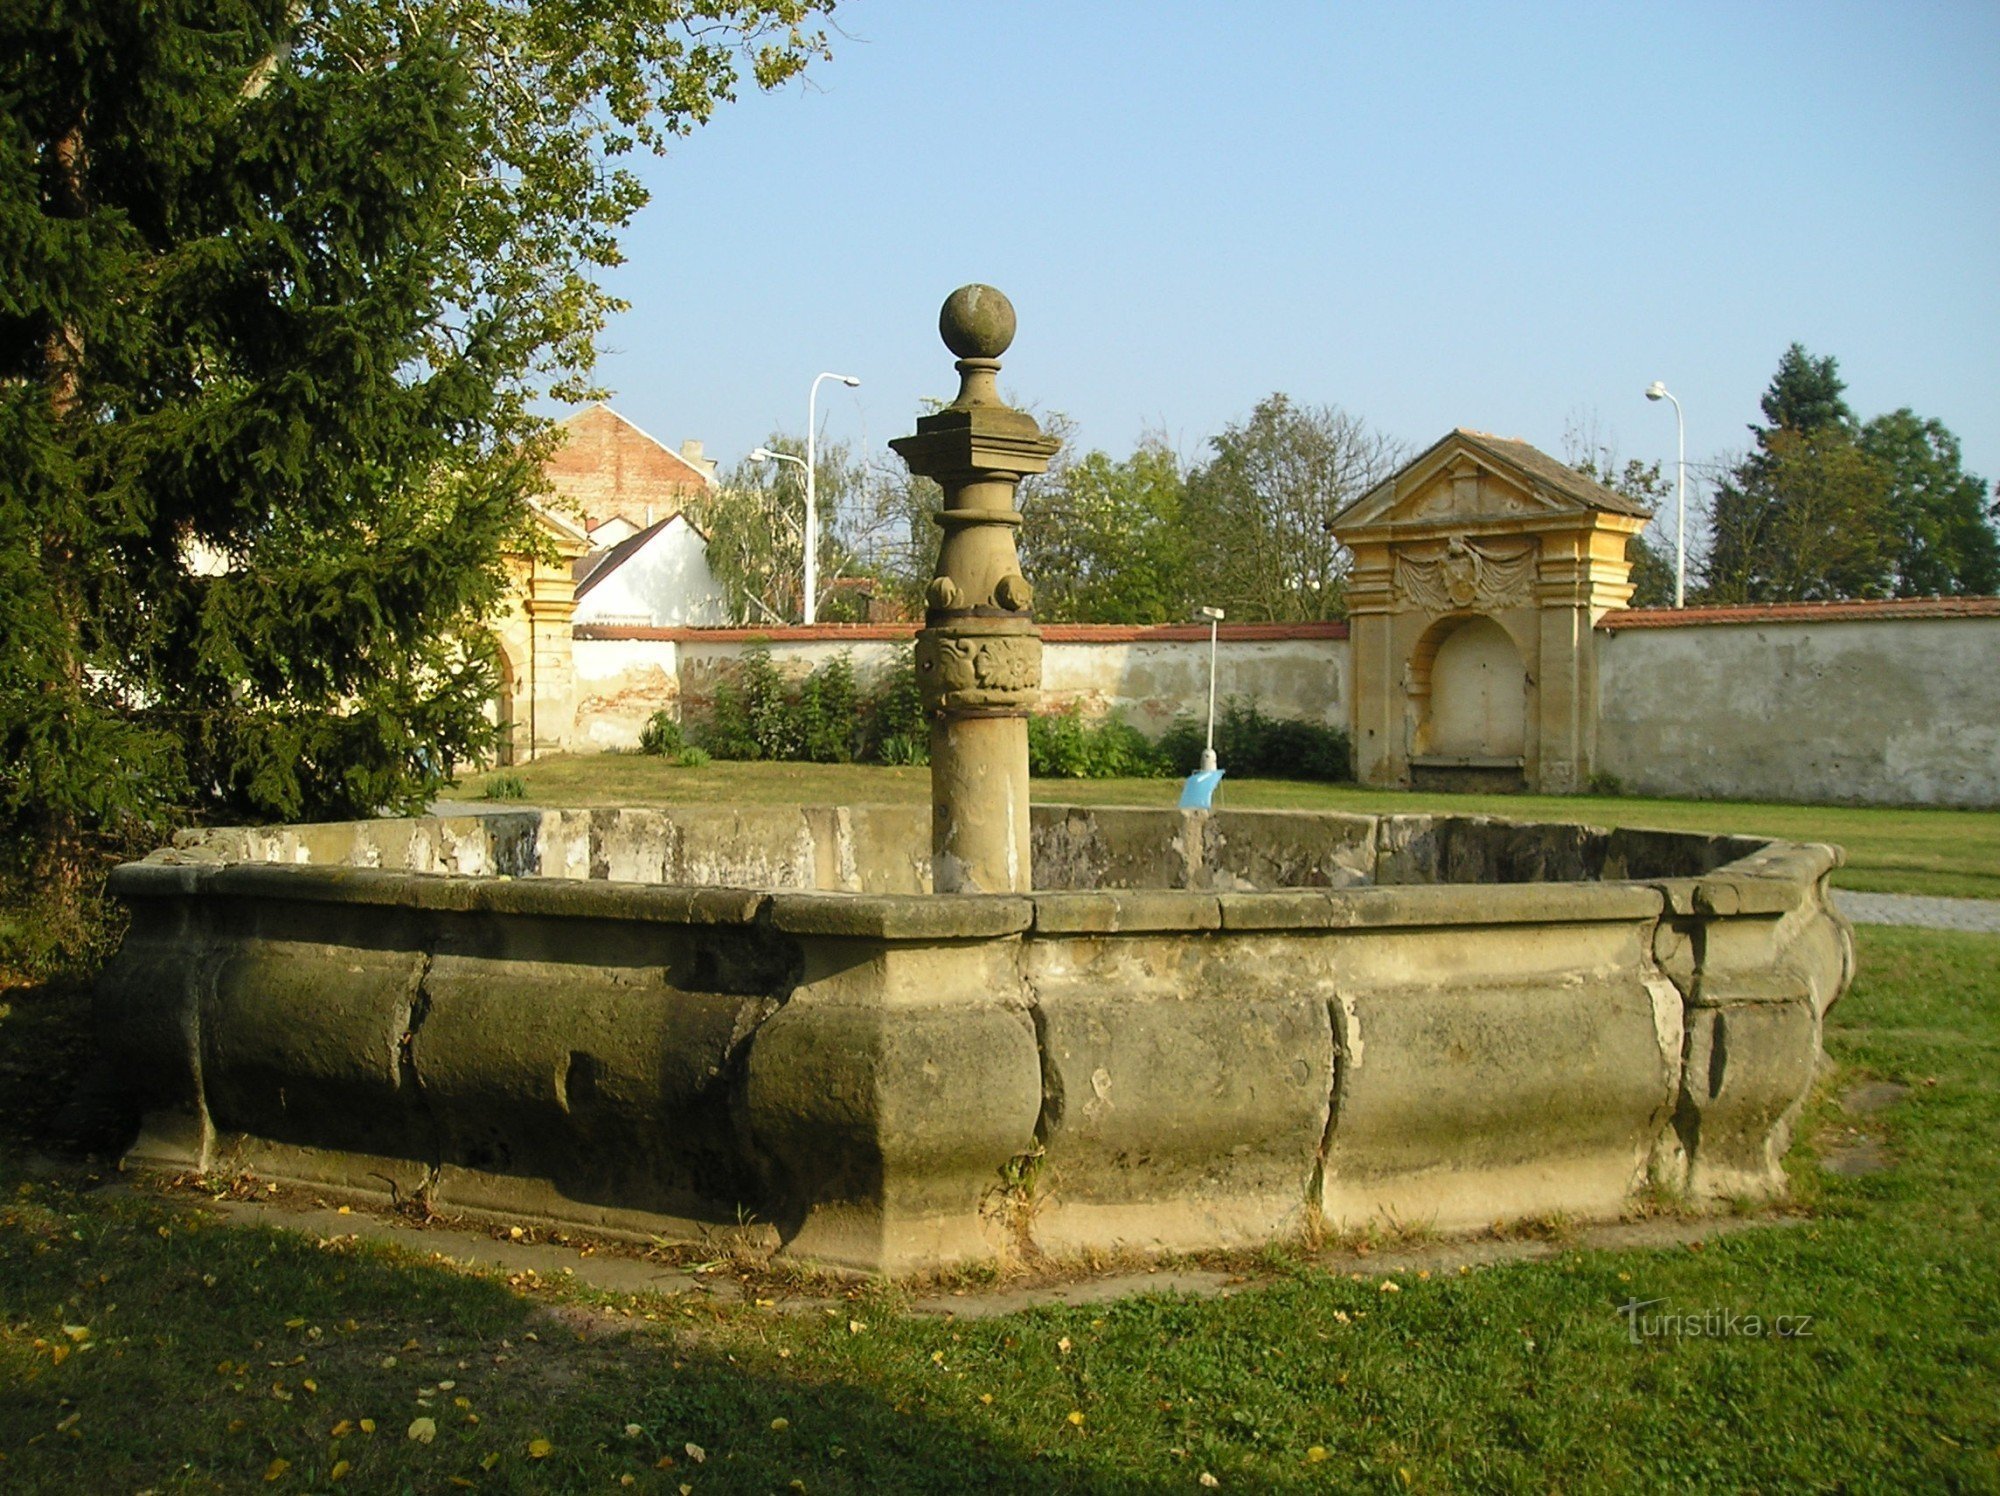 Dvorac-fontana Moravský Krumlov